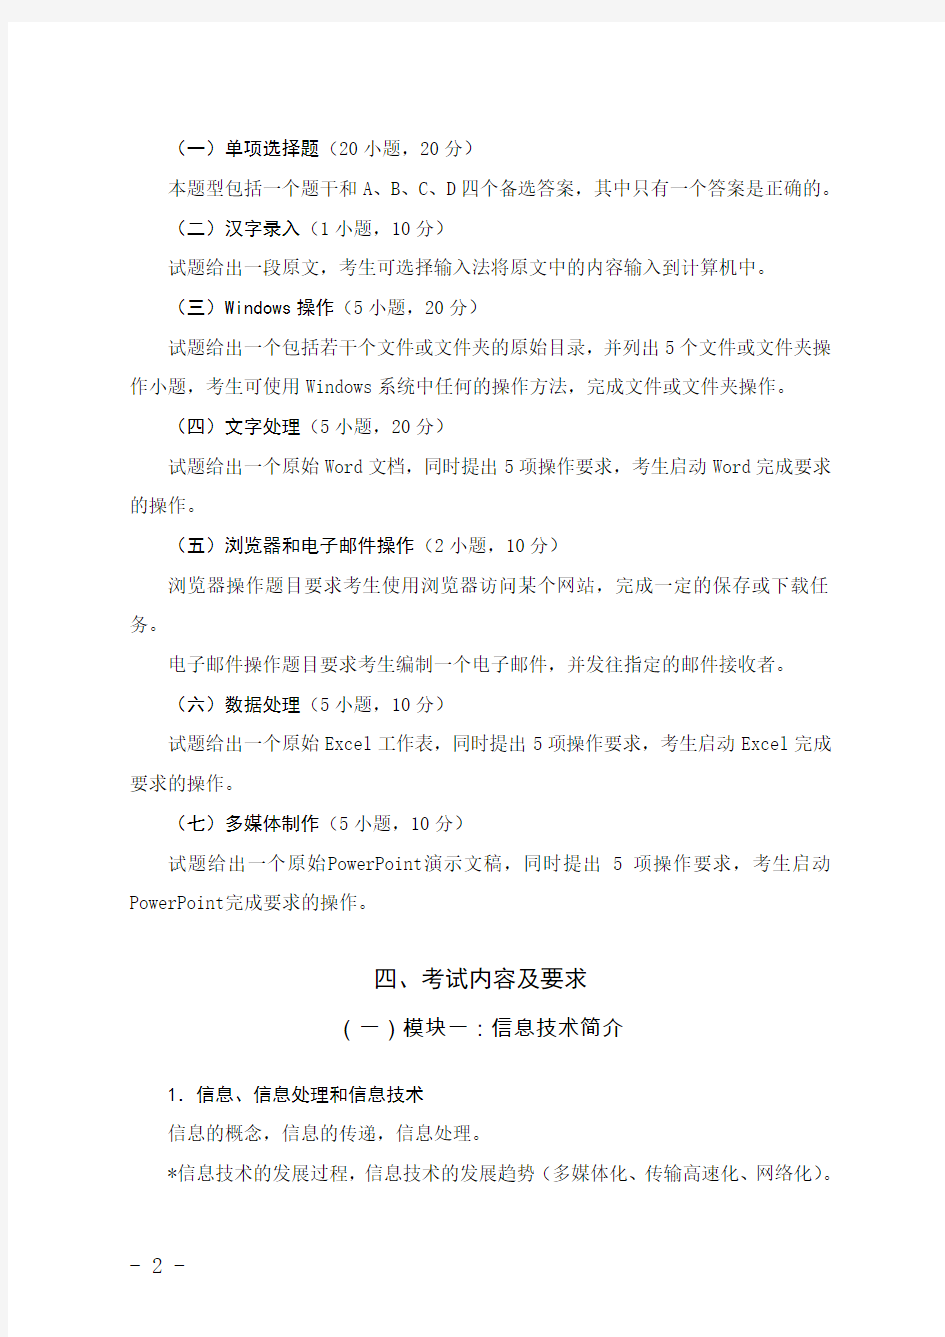 山东省初中信息技术等级证书考试说明(试行)(2015印刷版)